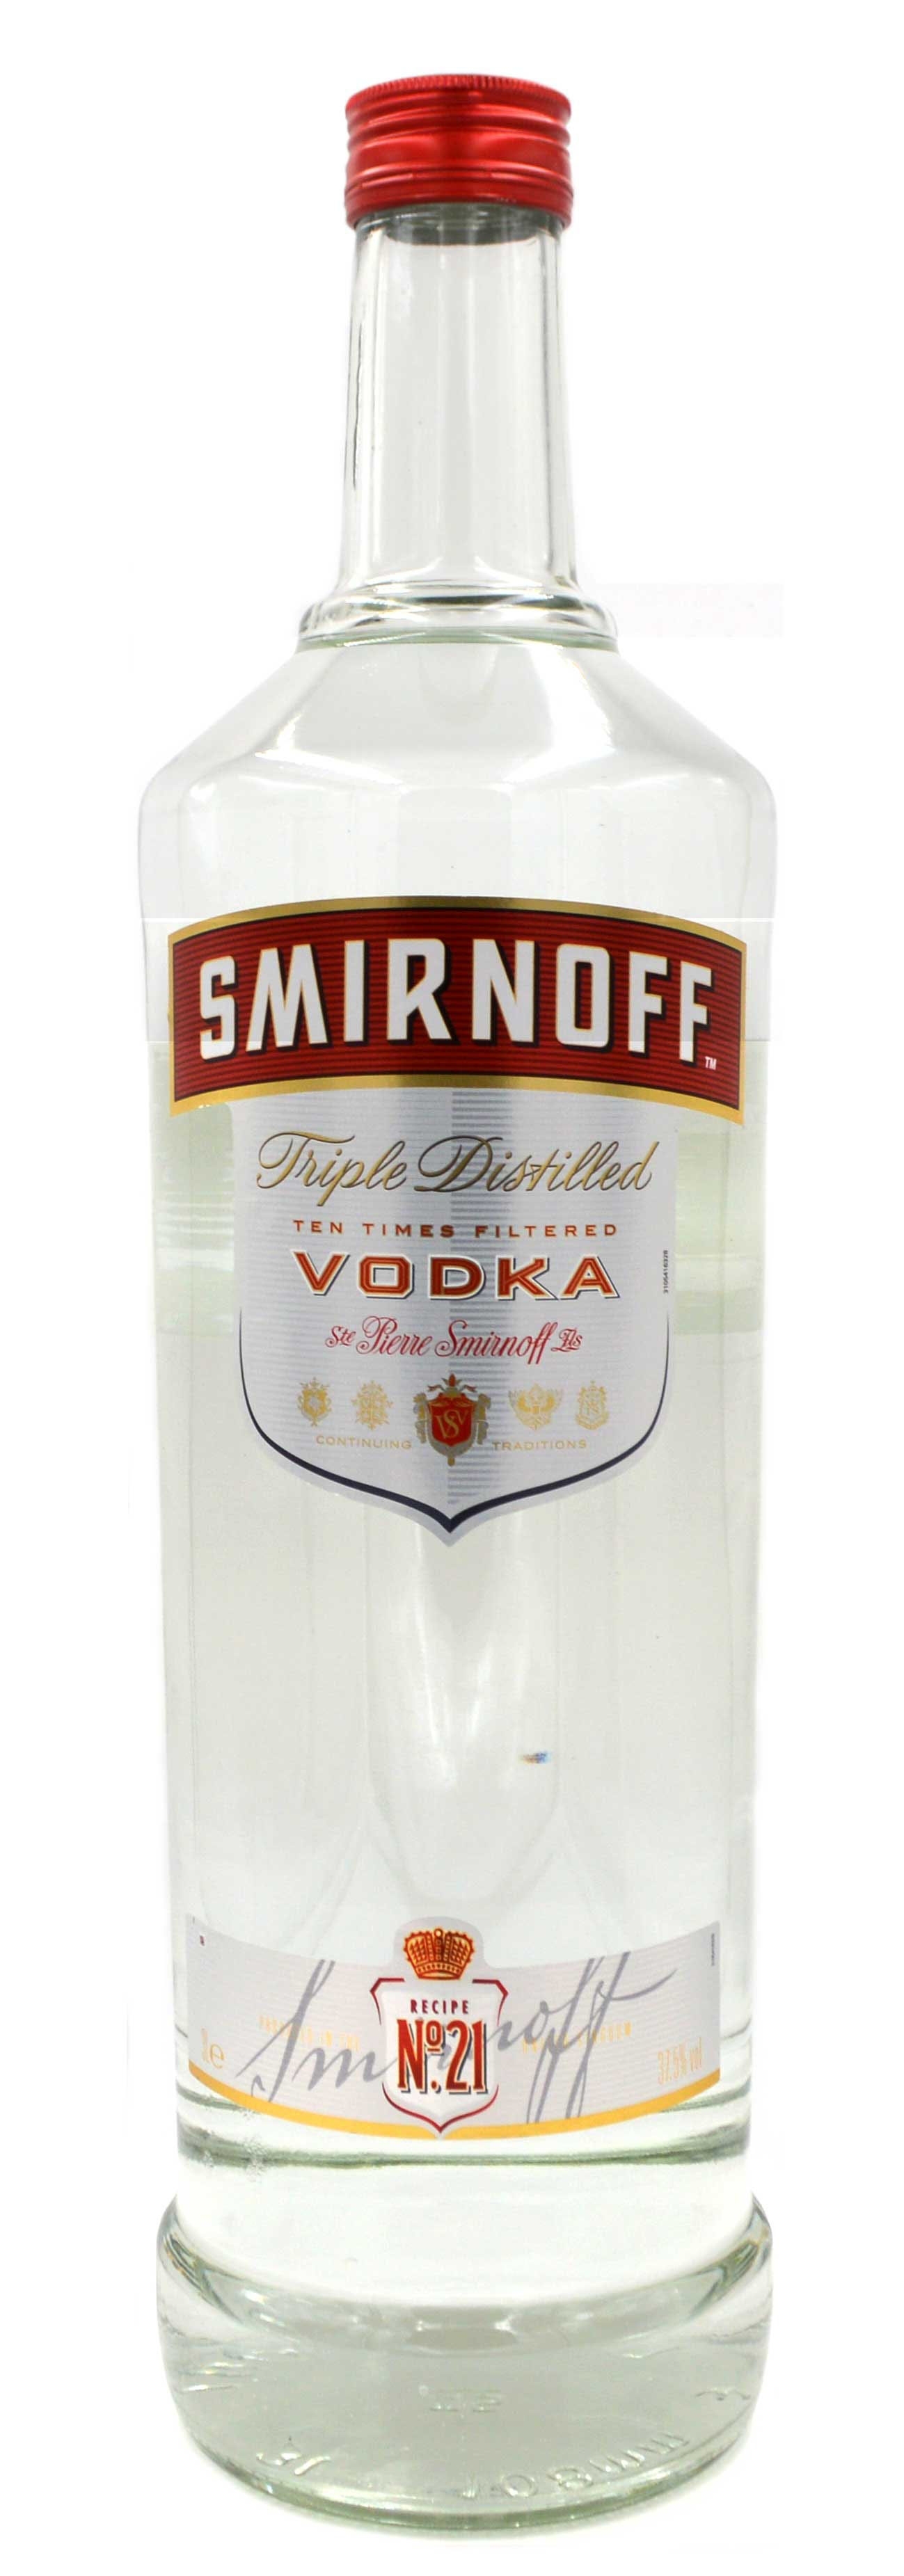 Smirnoff Vodka Red Label - 3-Liter Grossflasche - 3-fach destillierter Wodka